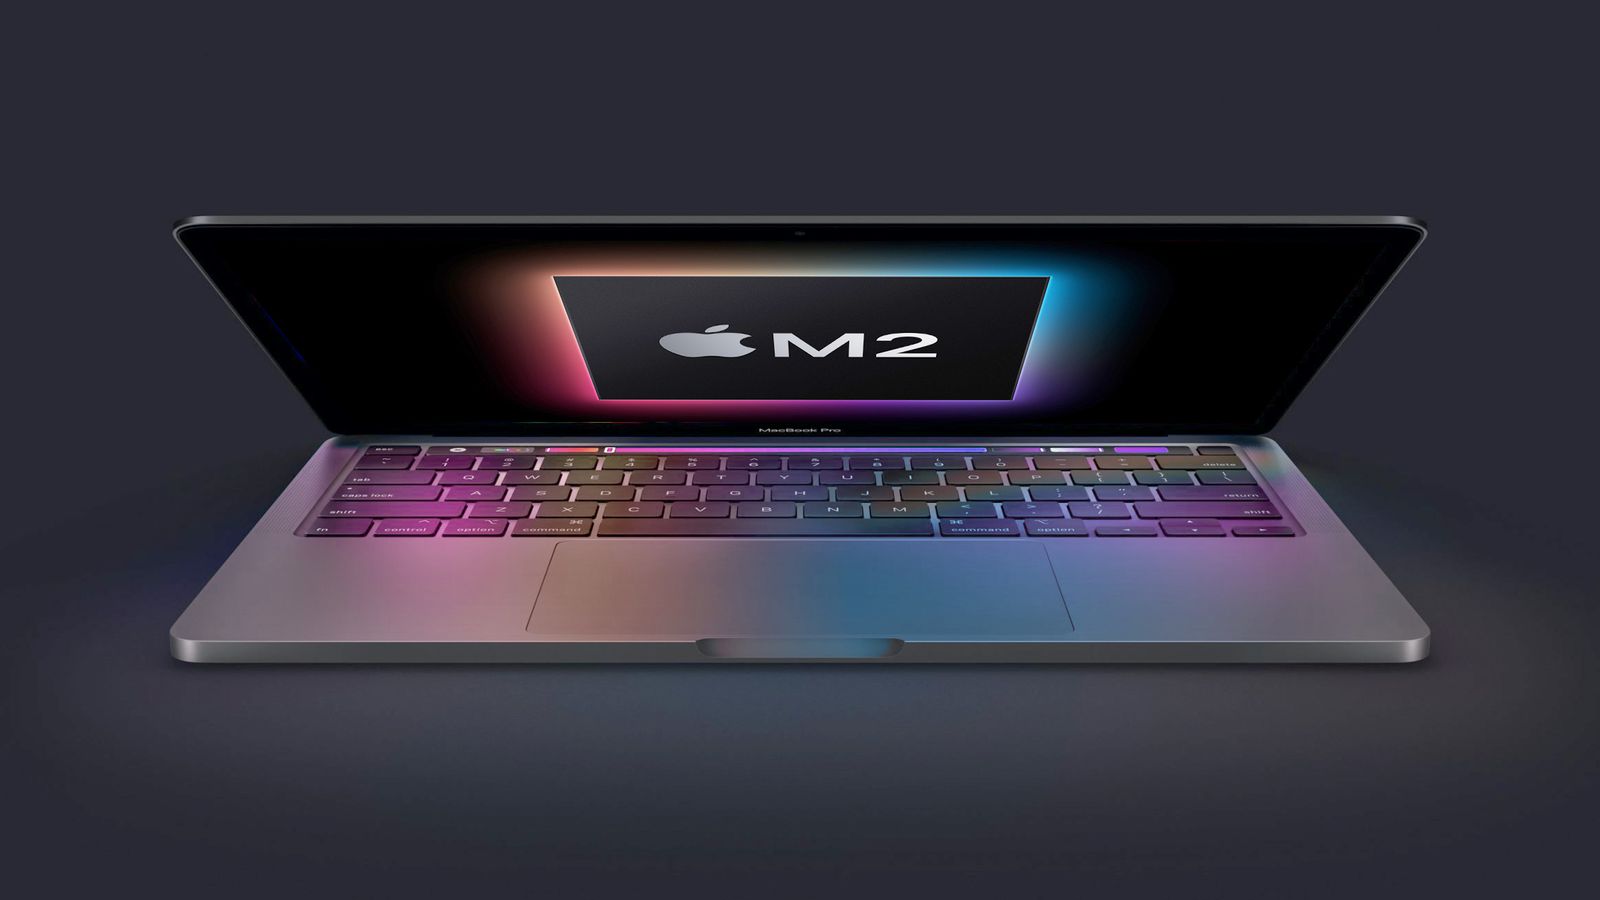 Perdita: a marzo, Apple introdurrà un MacBook Pro da 13 pollici con un chip M2 e lo stesso design